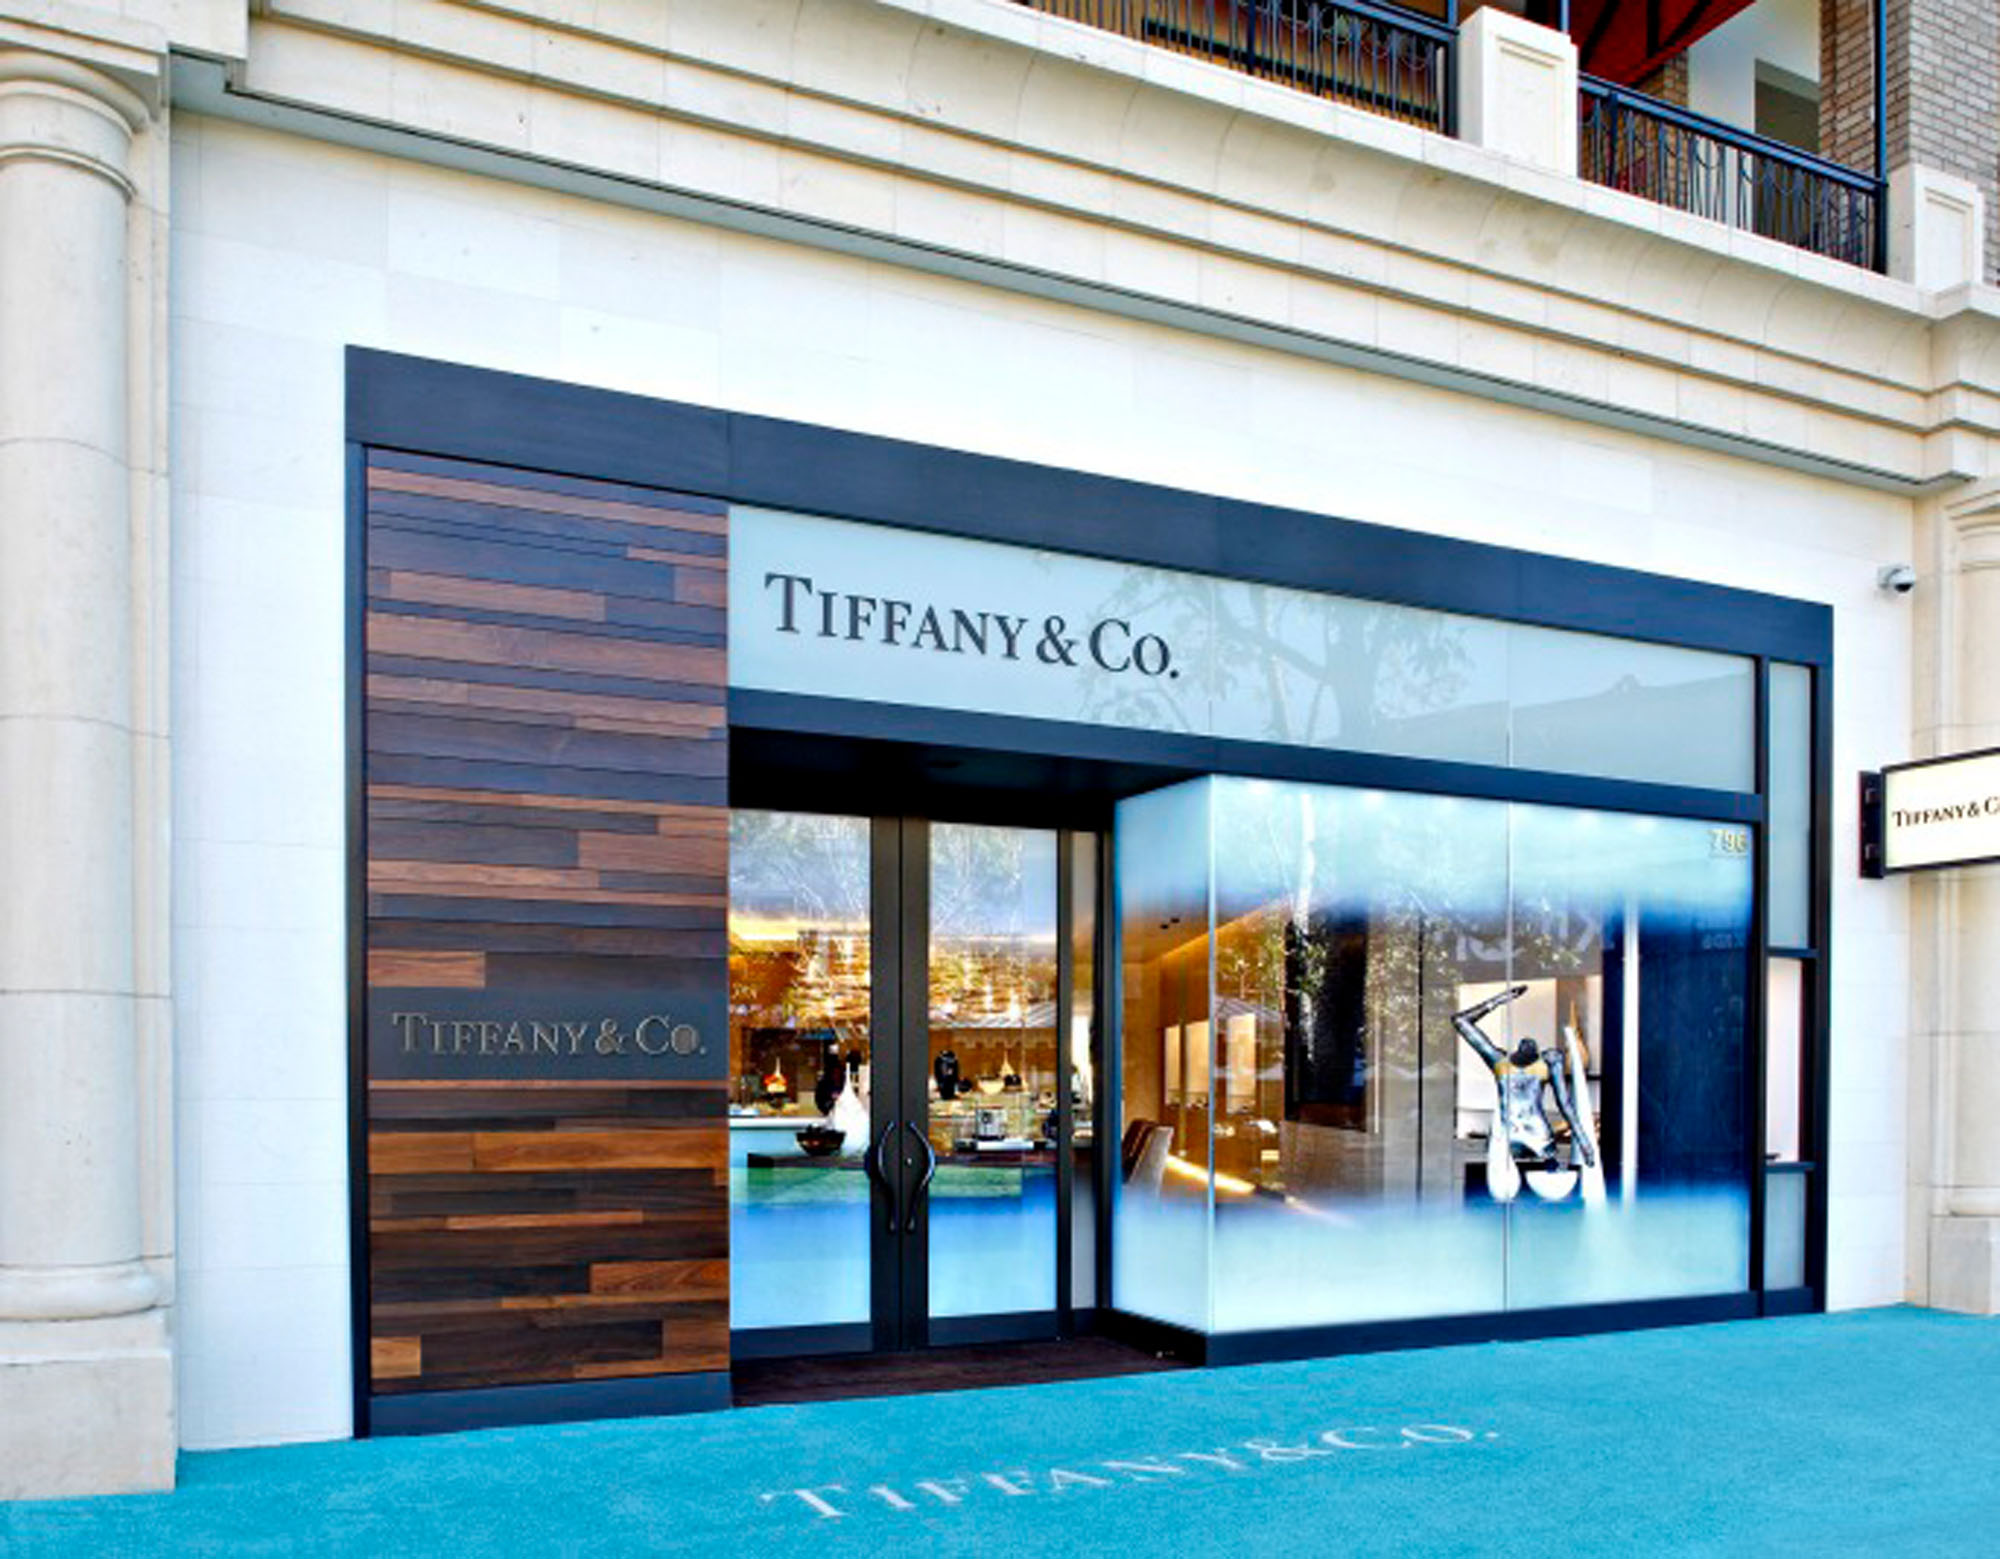 Tiffany & Co - NELSON Worldwide